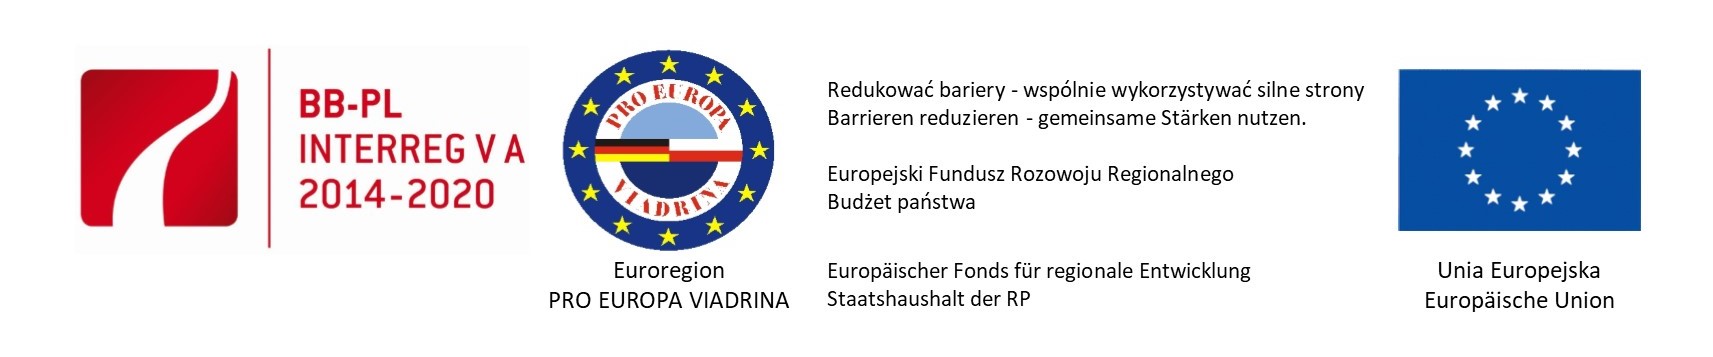 belka_euroregion